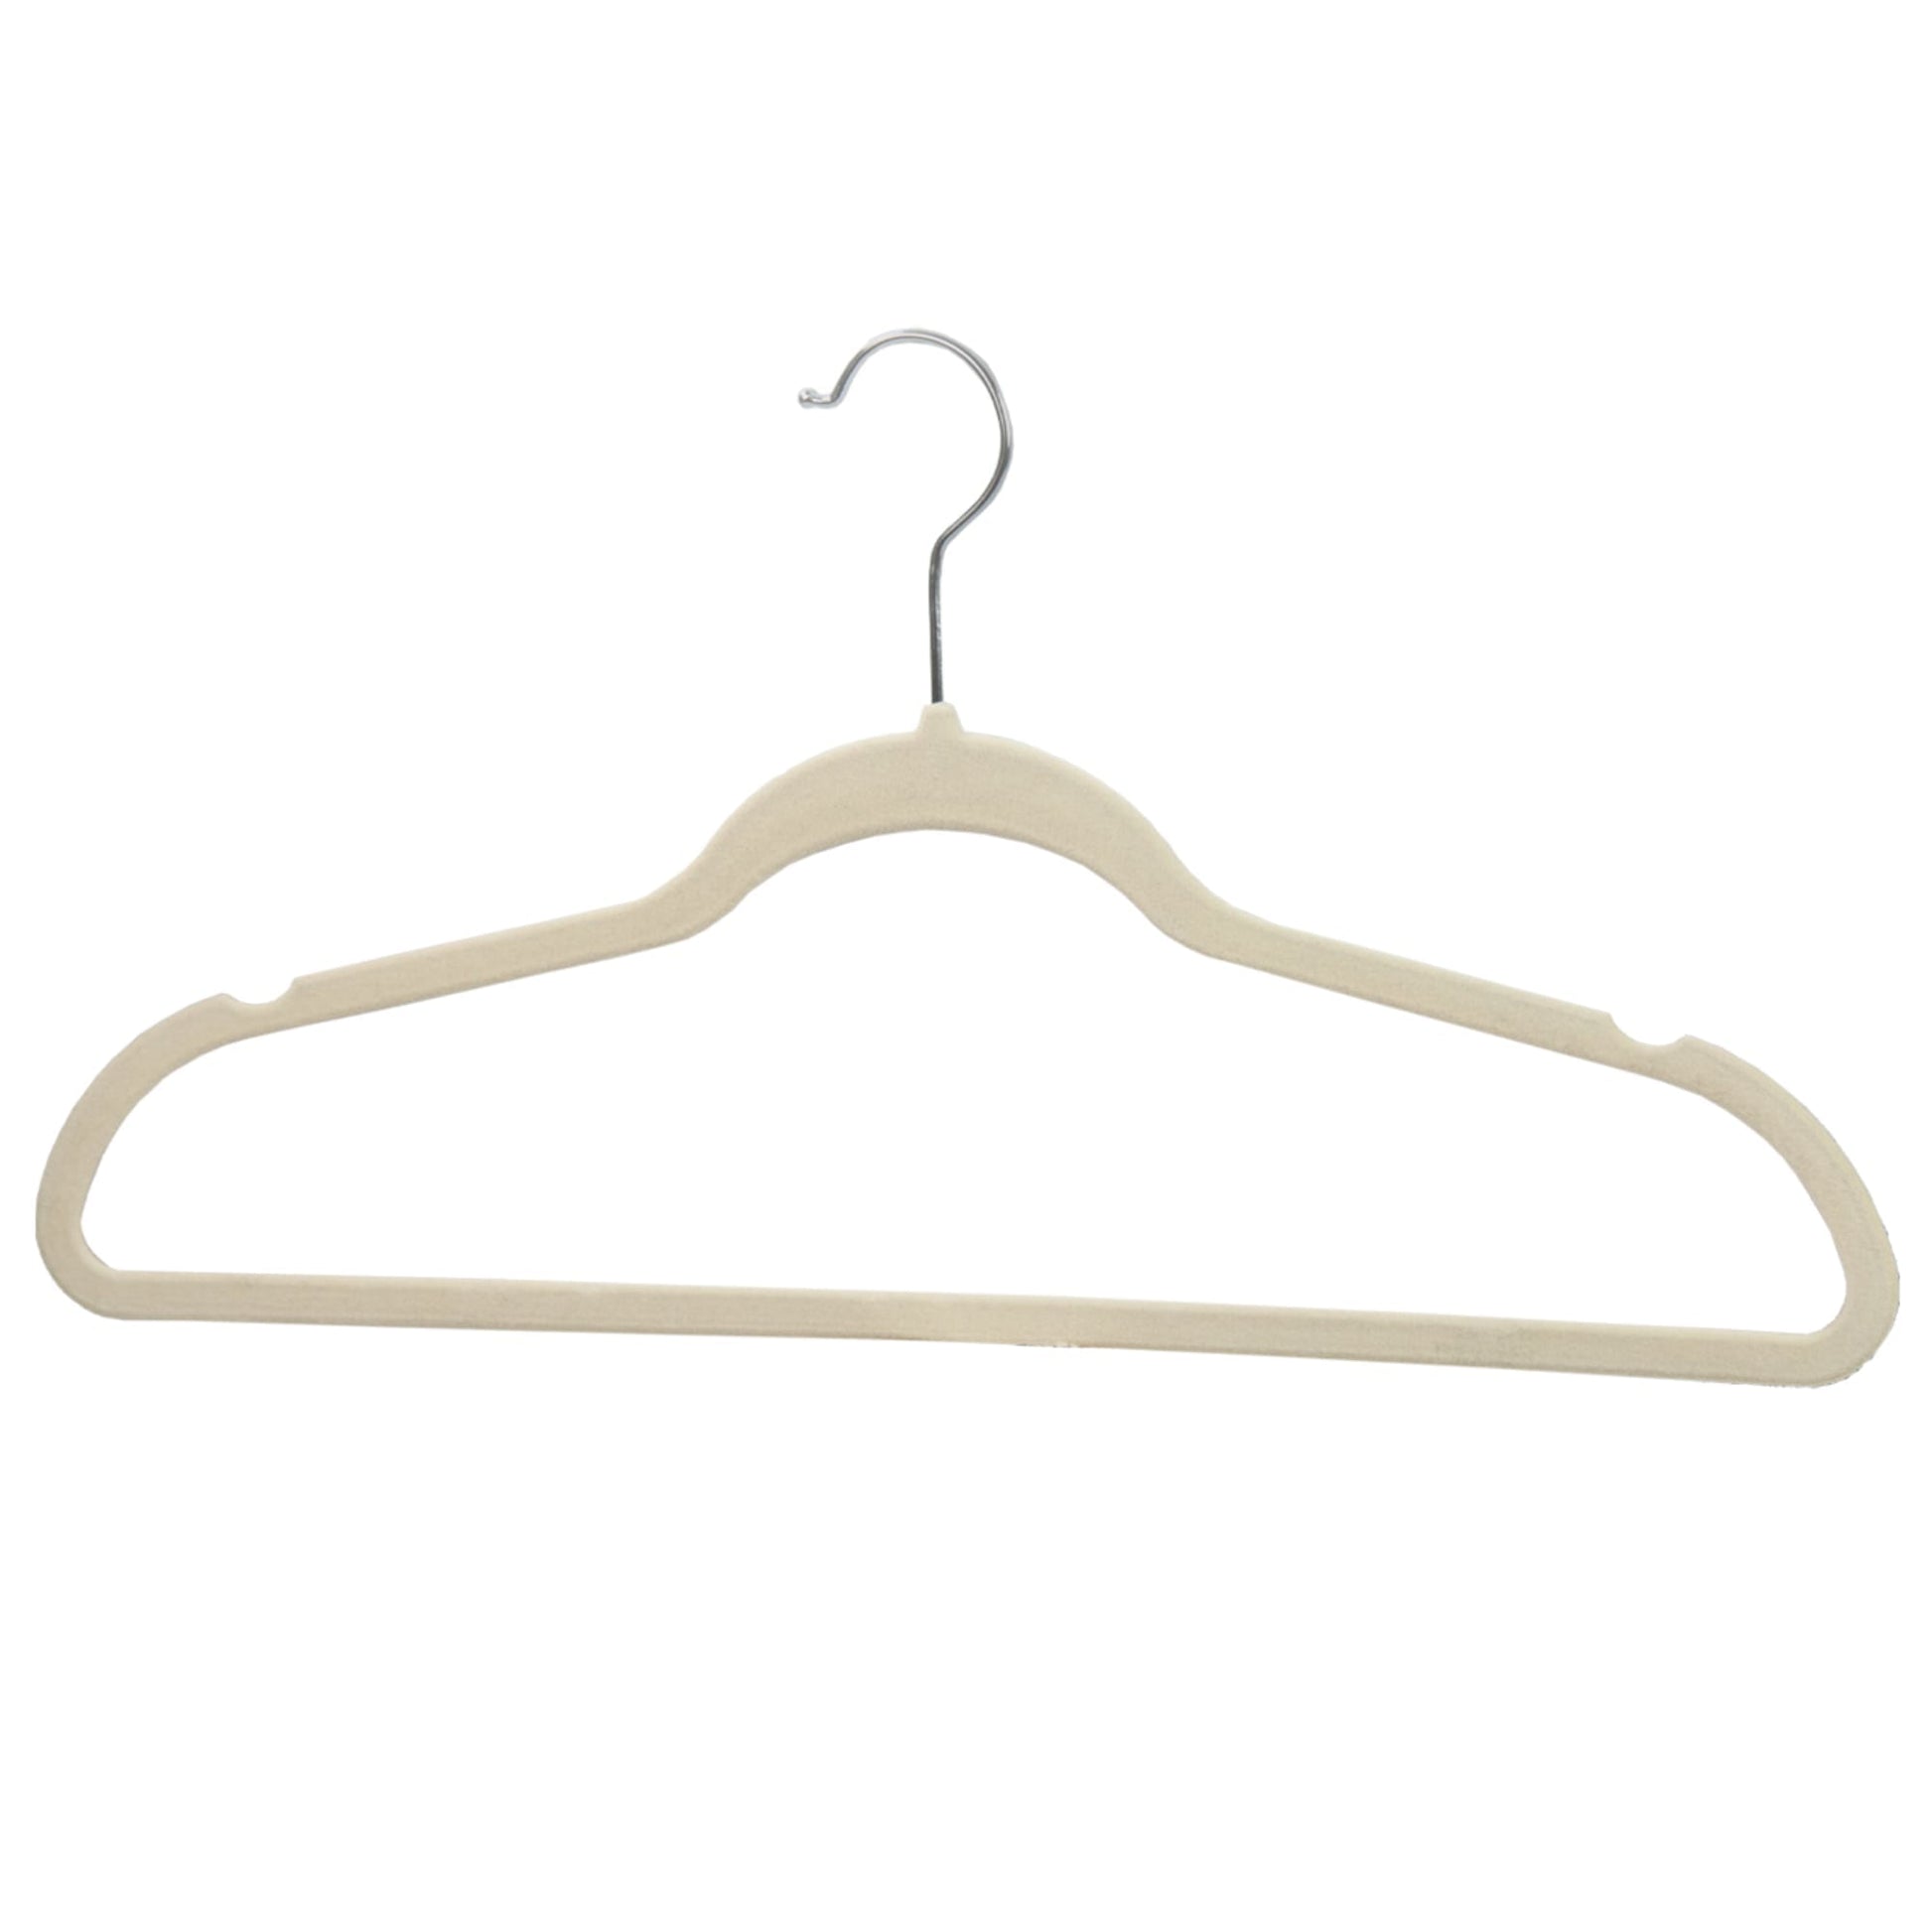 HomeIT Velvet Hangers 30 Pack Slim Clothes Hangers - Ivory